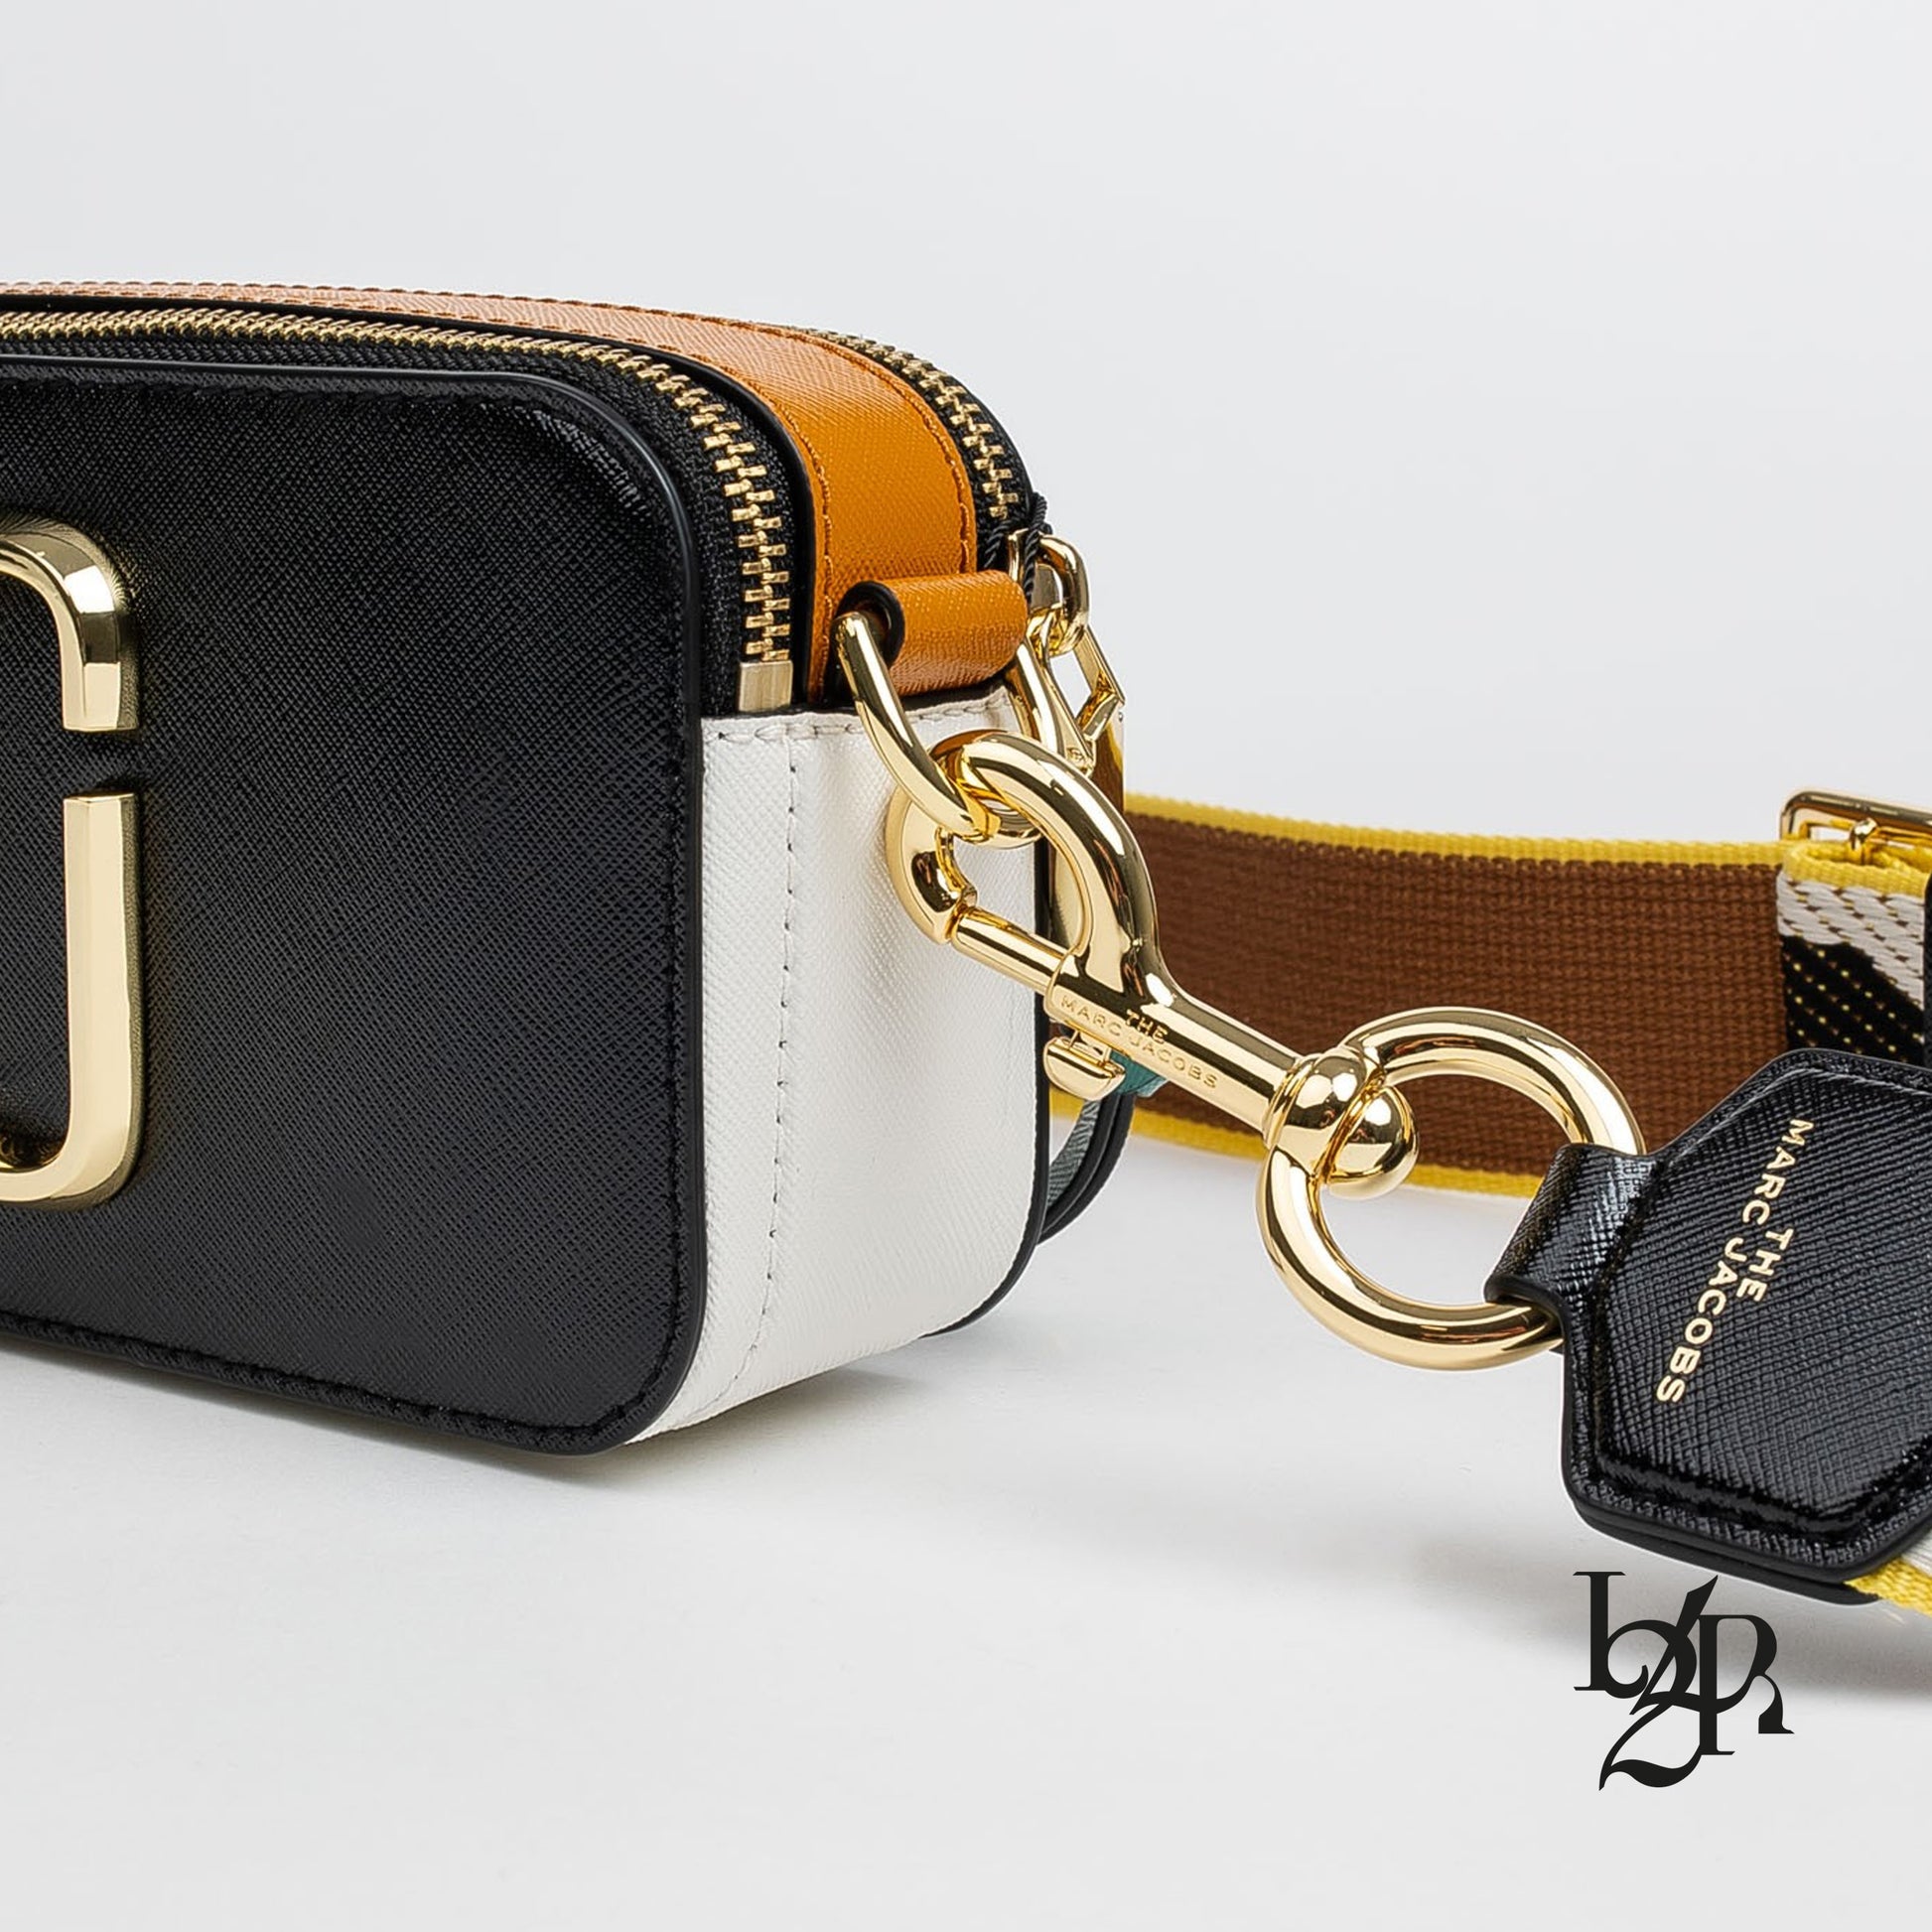 Marc Jacobs Women's Snapshot Camera Bag, Black/Honey Ginger Multi